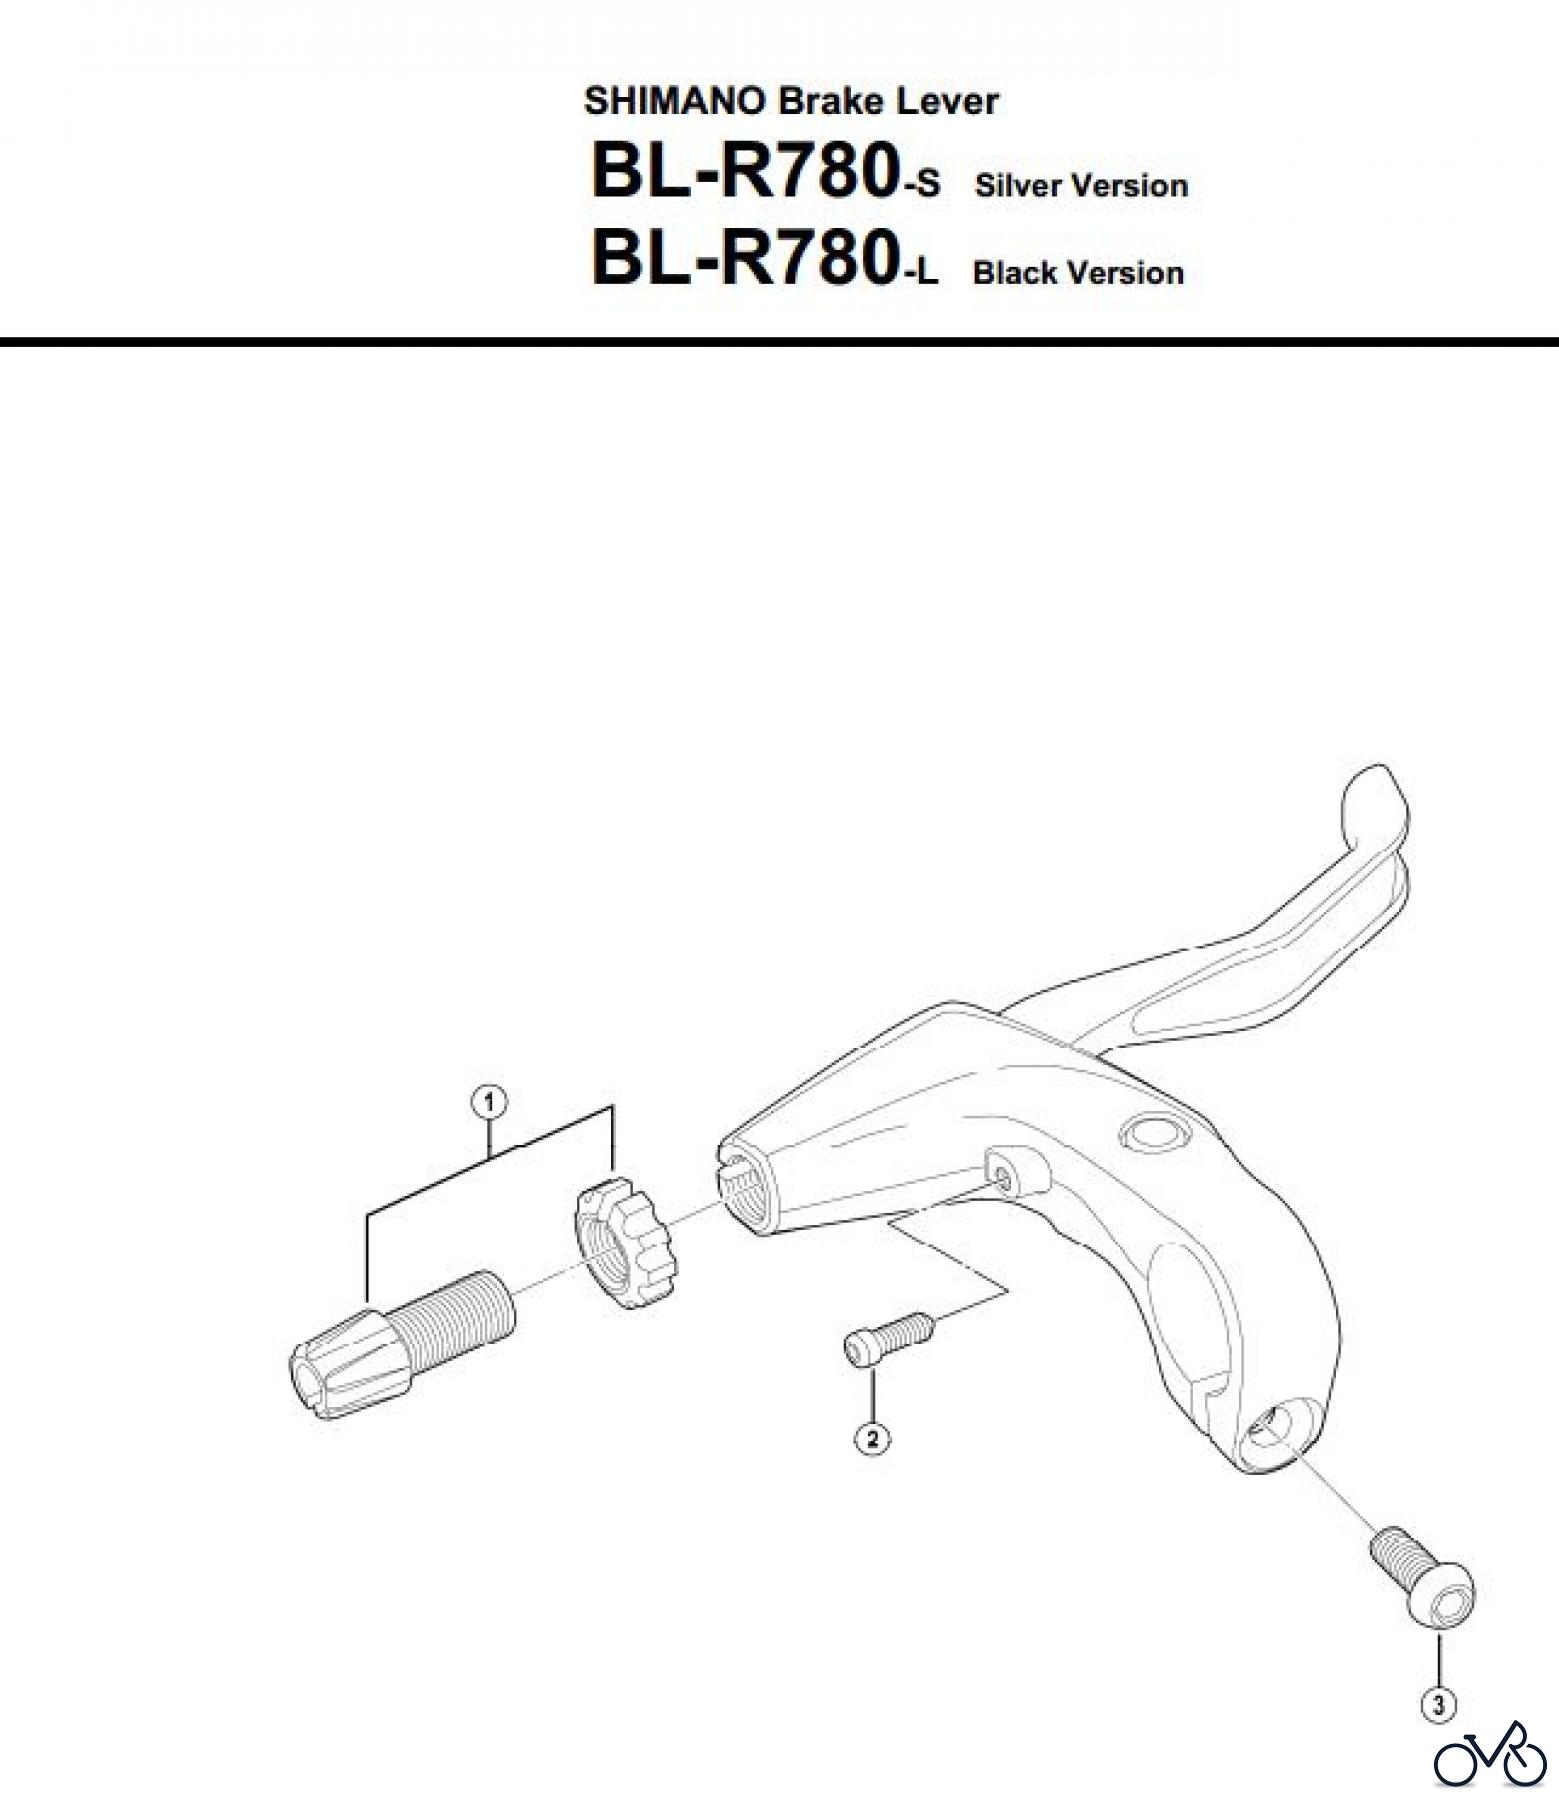  Shimano BL Brake Lever - Bremshebel BL-R780-3219